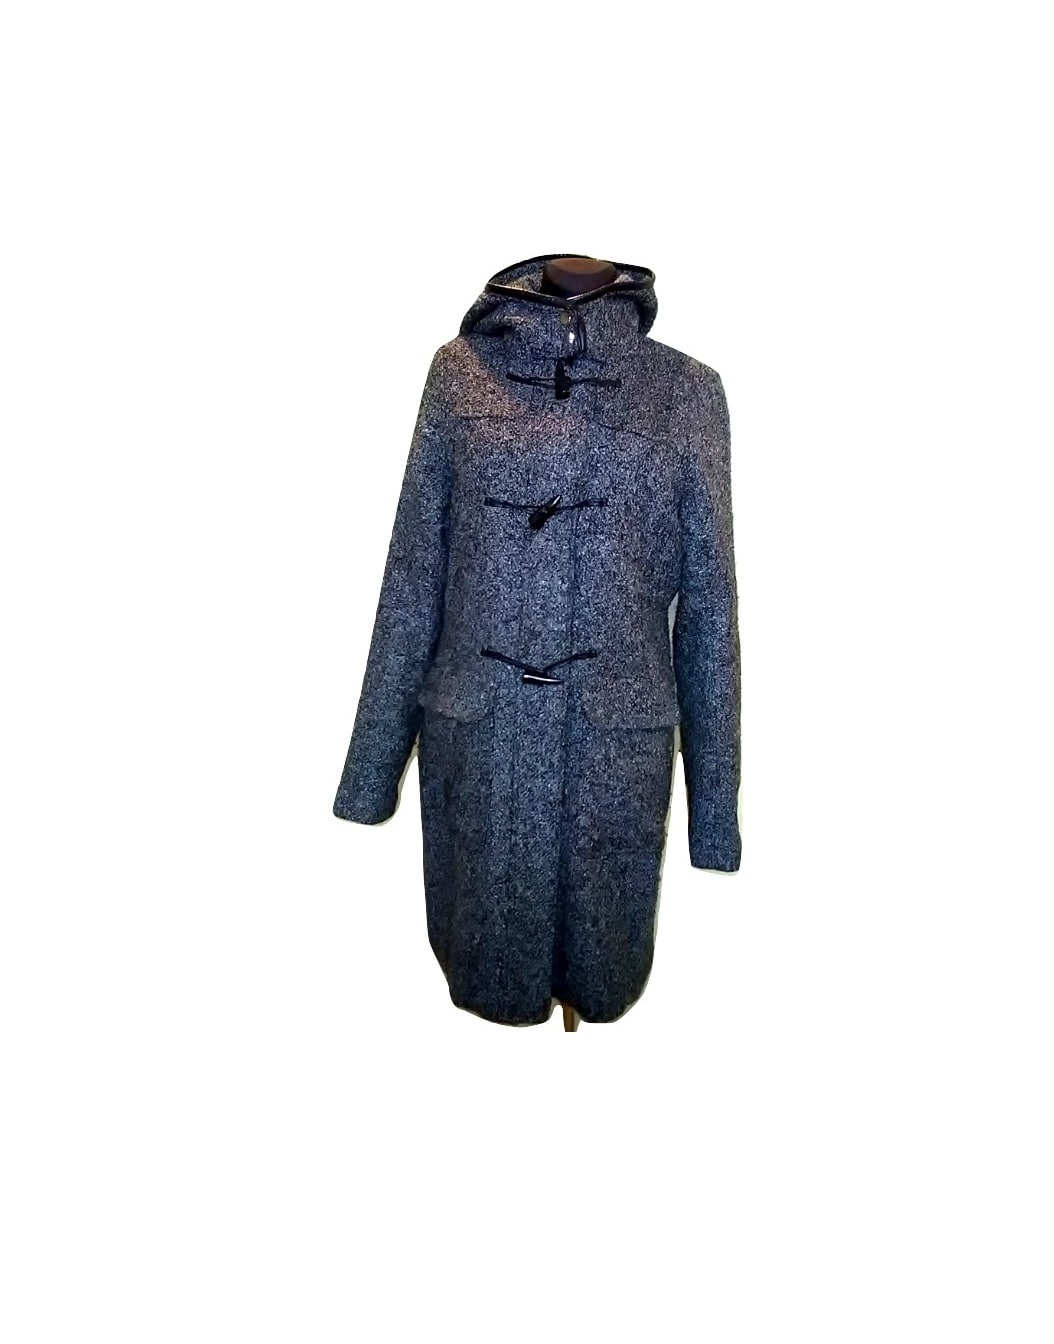 Moteriškas ilgas pilkas paltas su kapišonu, ETAGE, 40 dydis